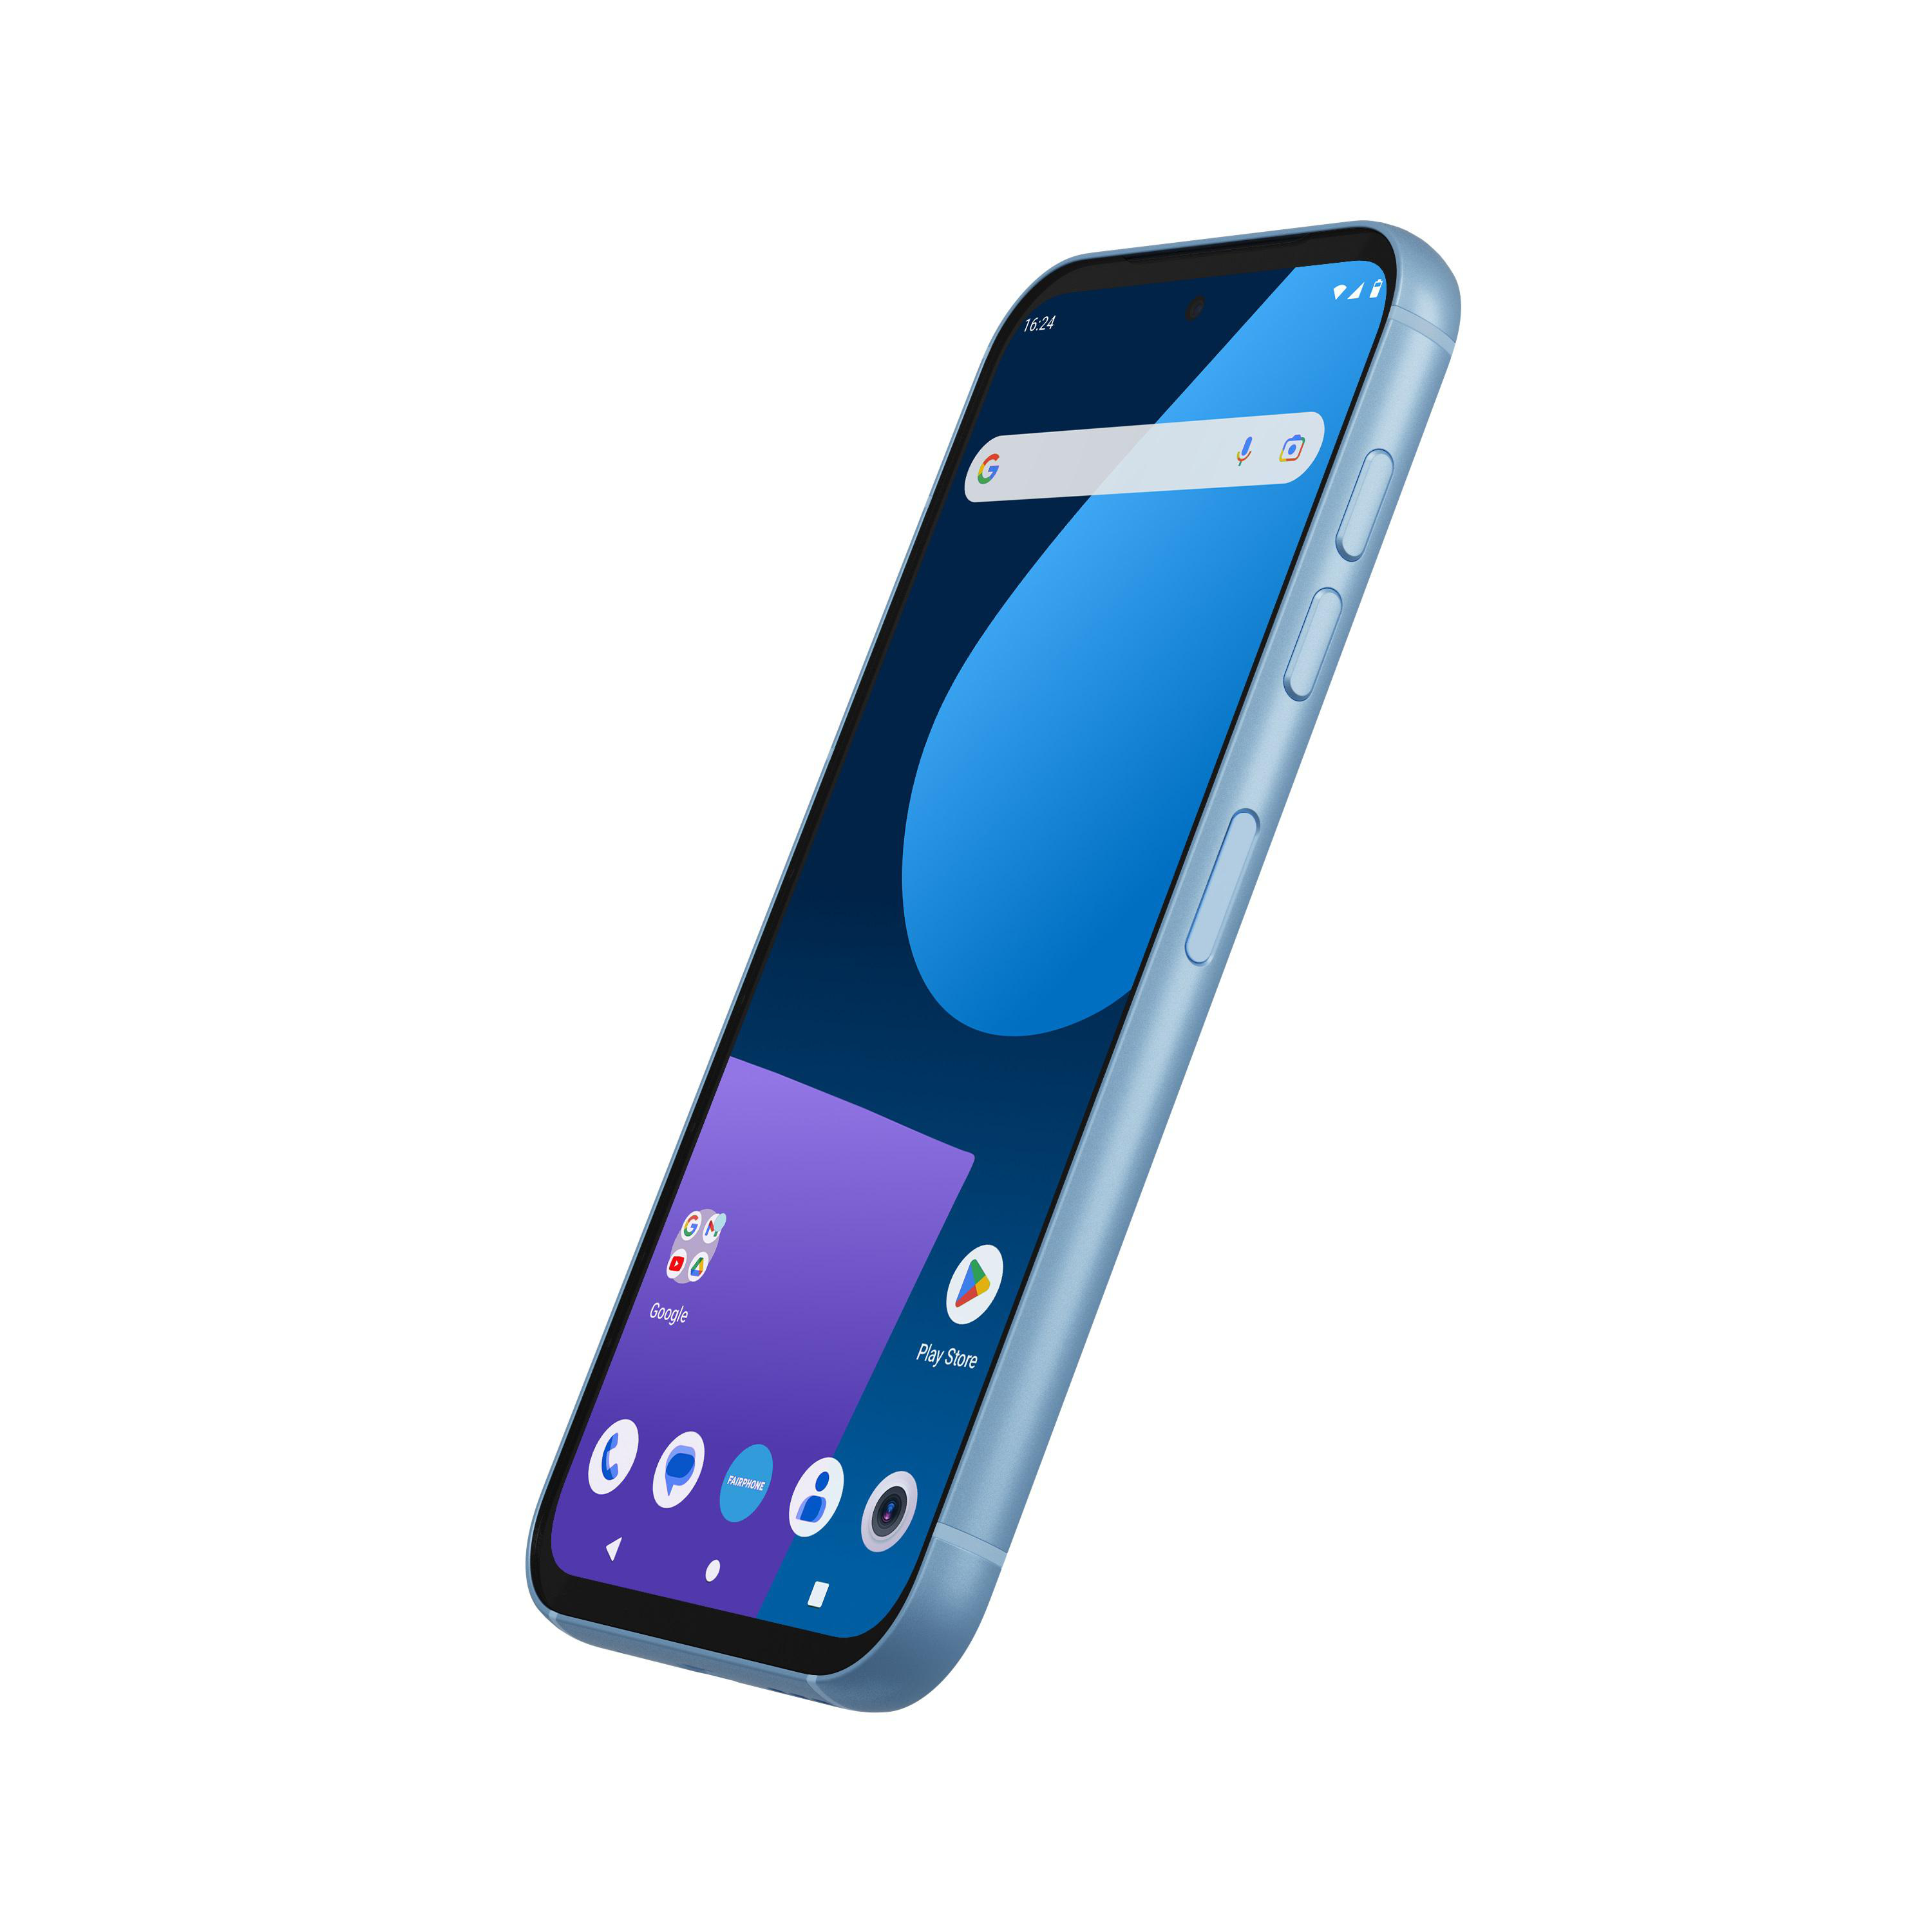 FAIRPHONE 5 GB Dual 256 Blue SIM